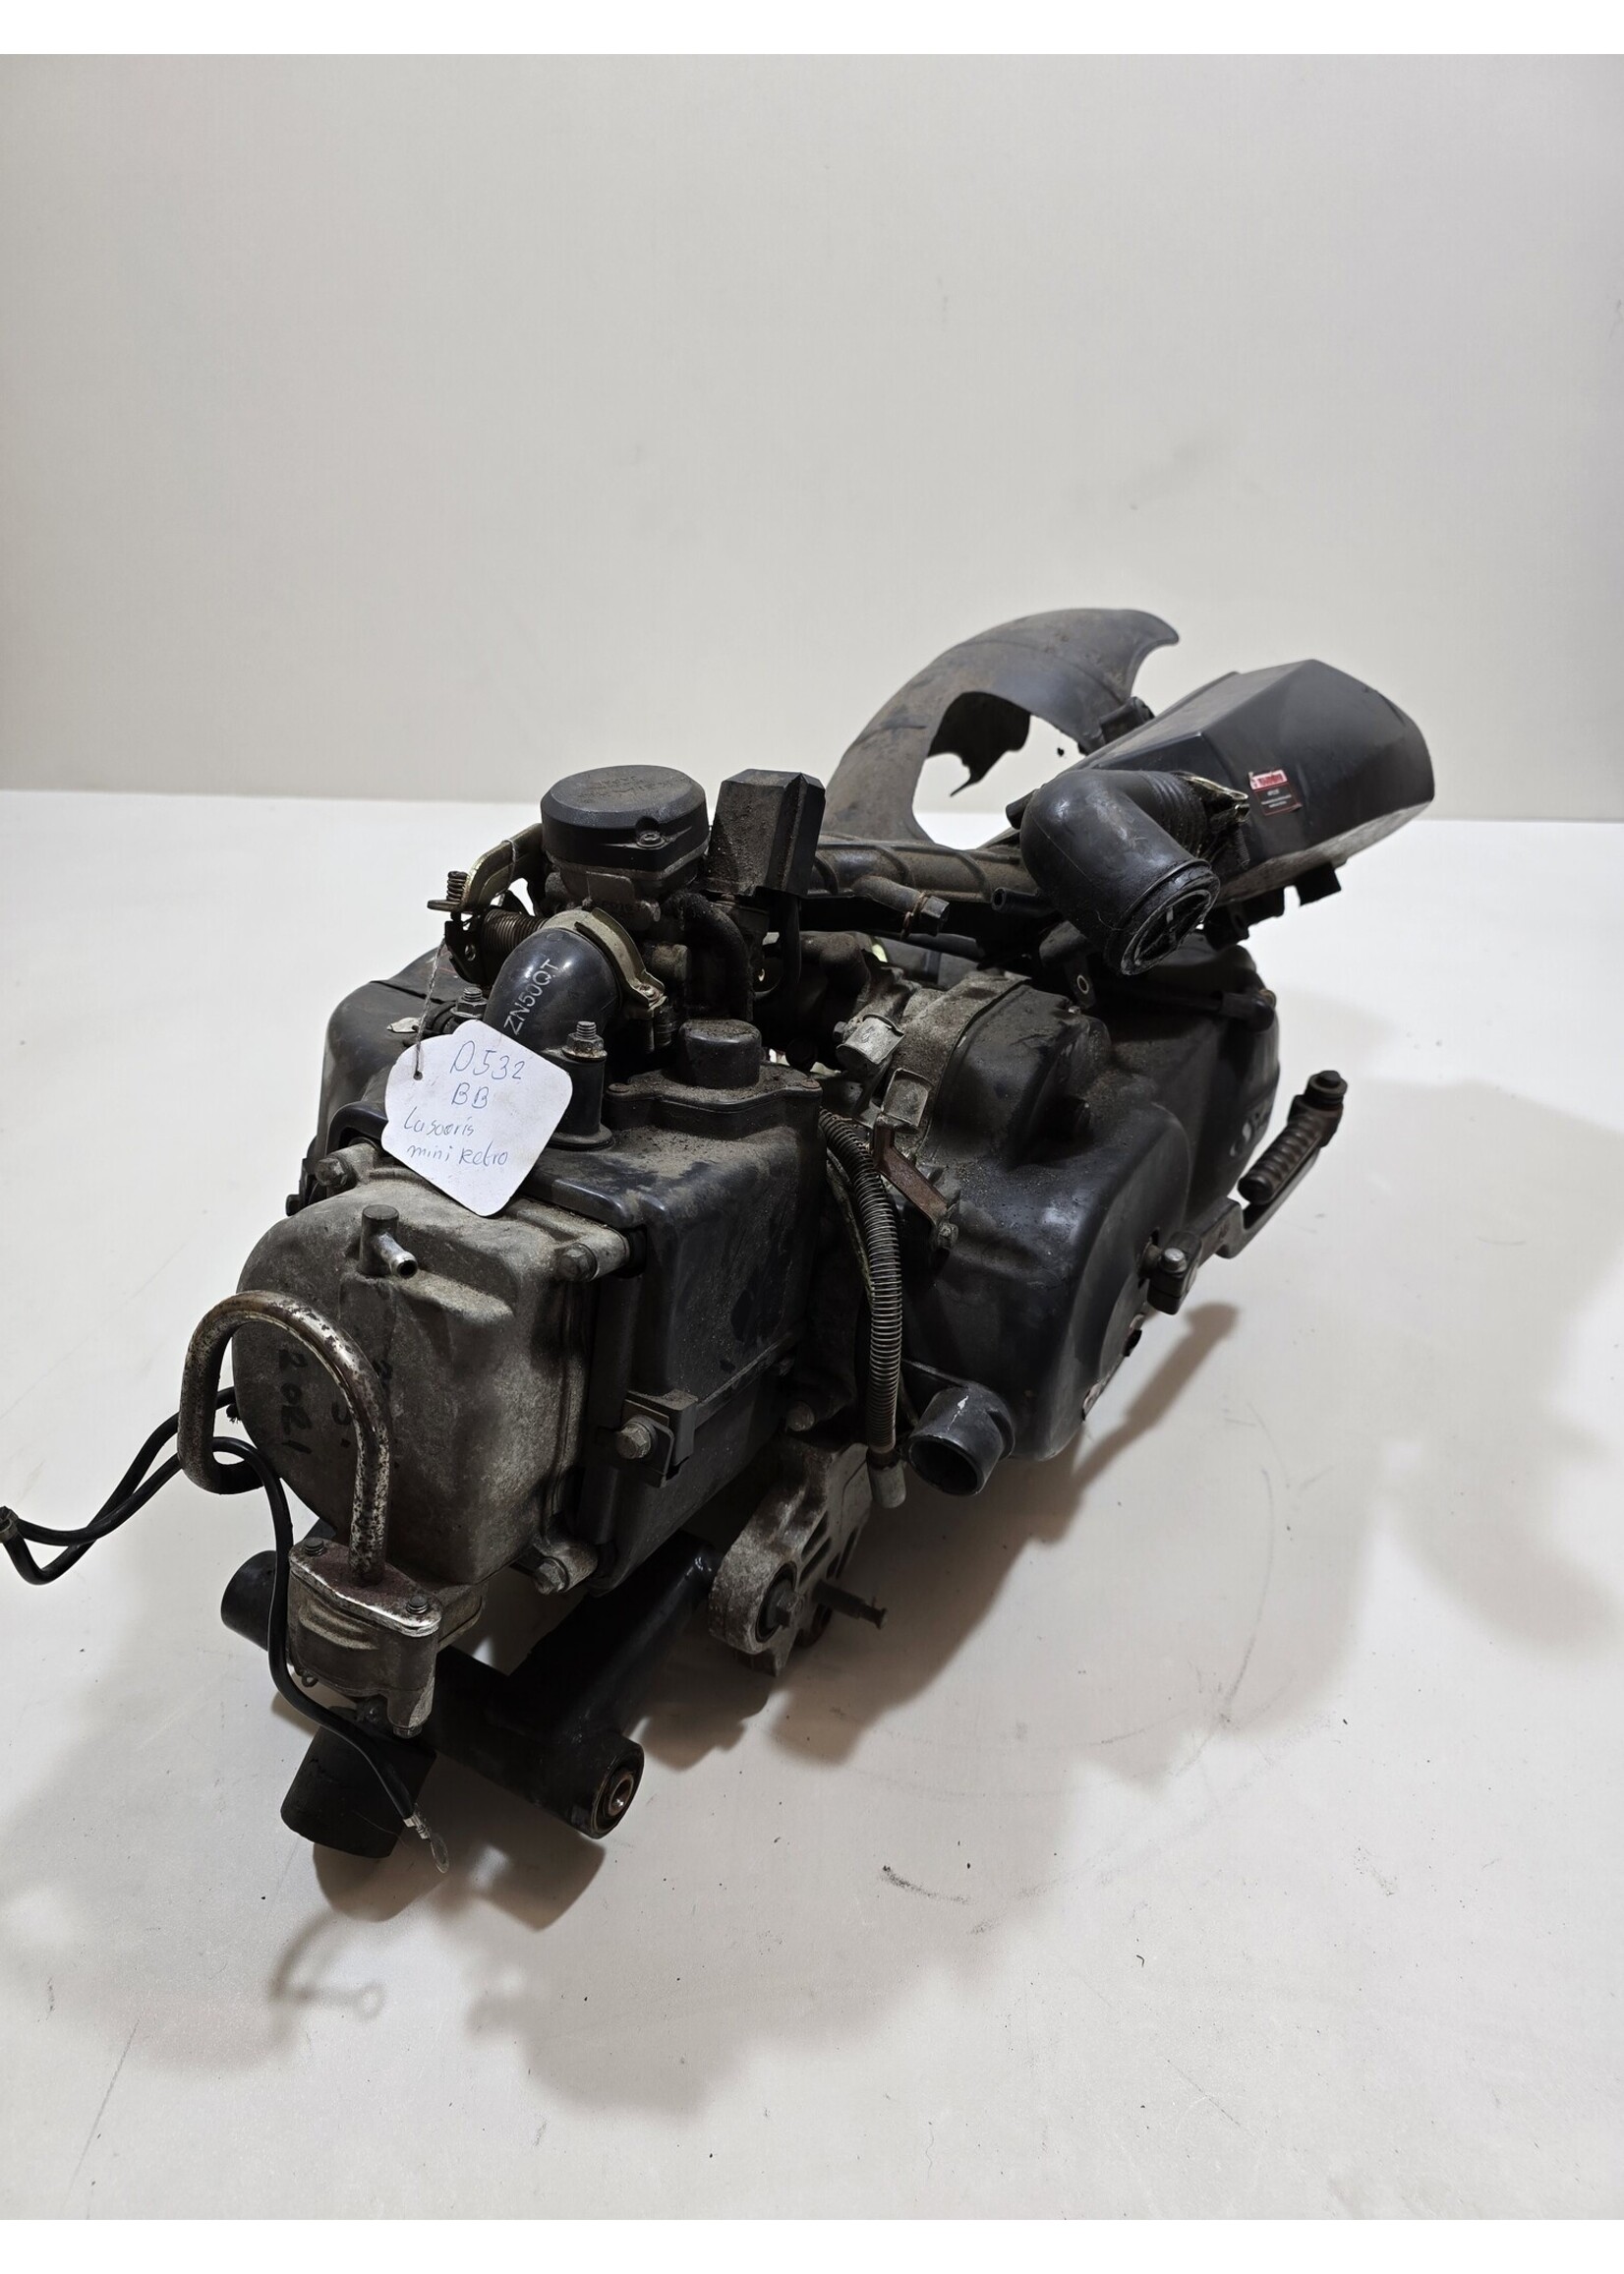 Santini / GY6 / E2 / Carburateur / Motorblok / 4Takt